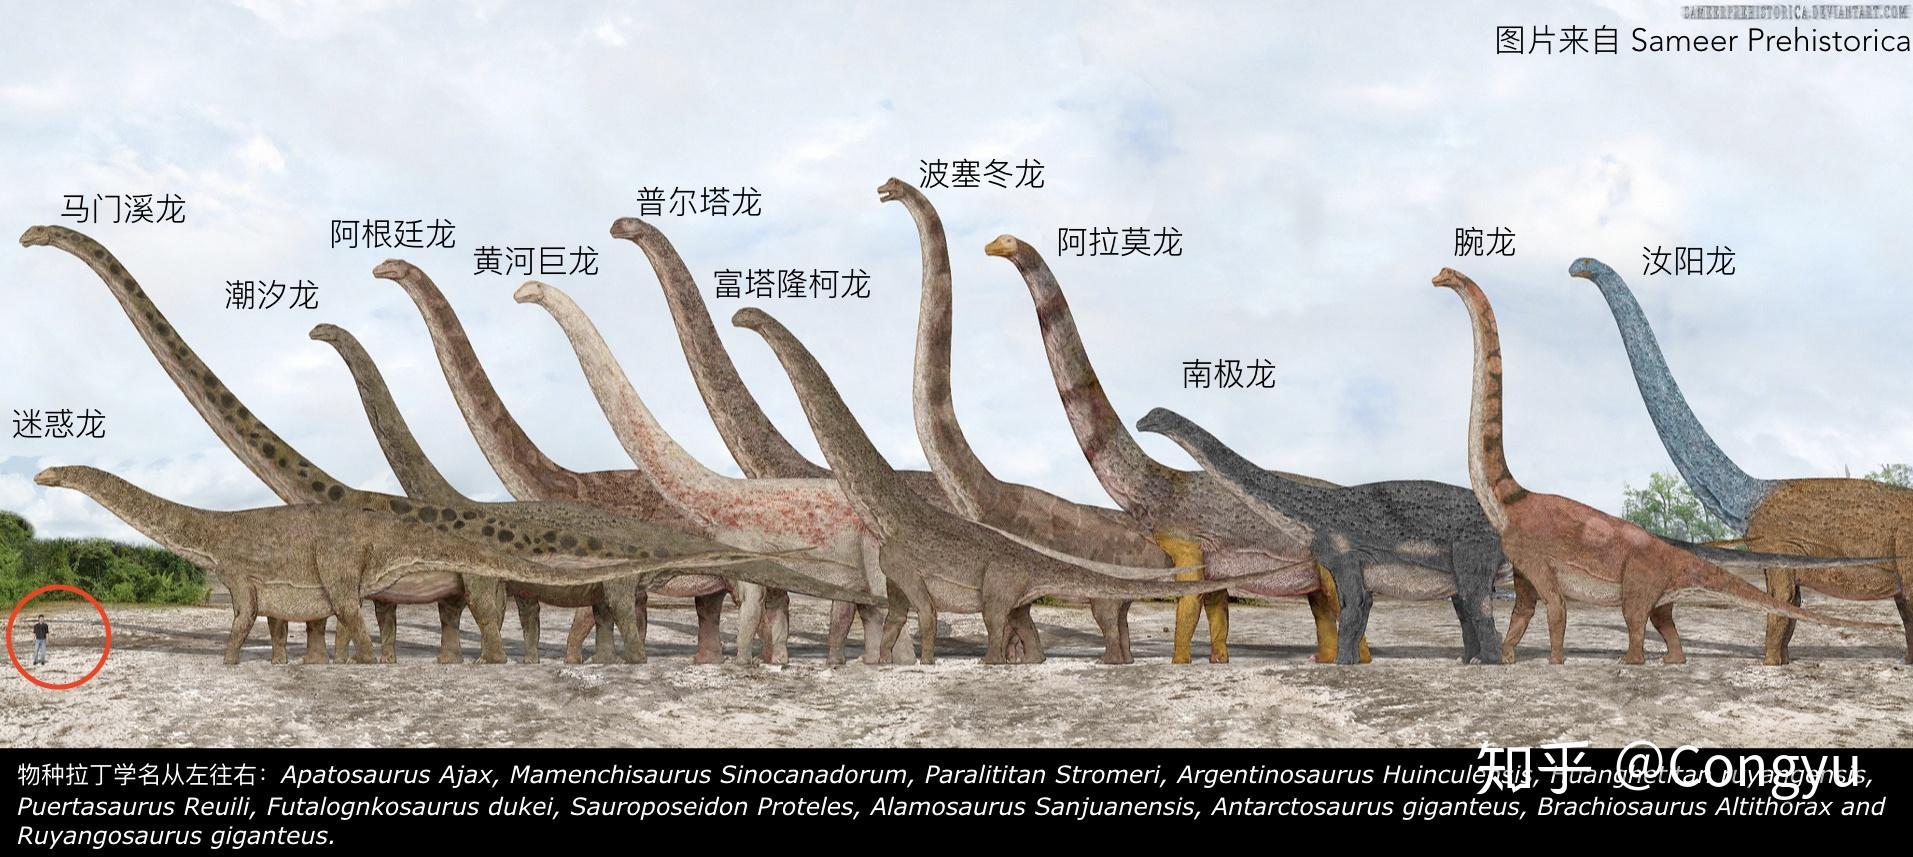 寻找最大的恐龙7方法与结论